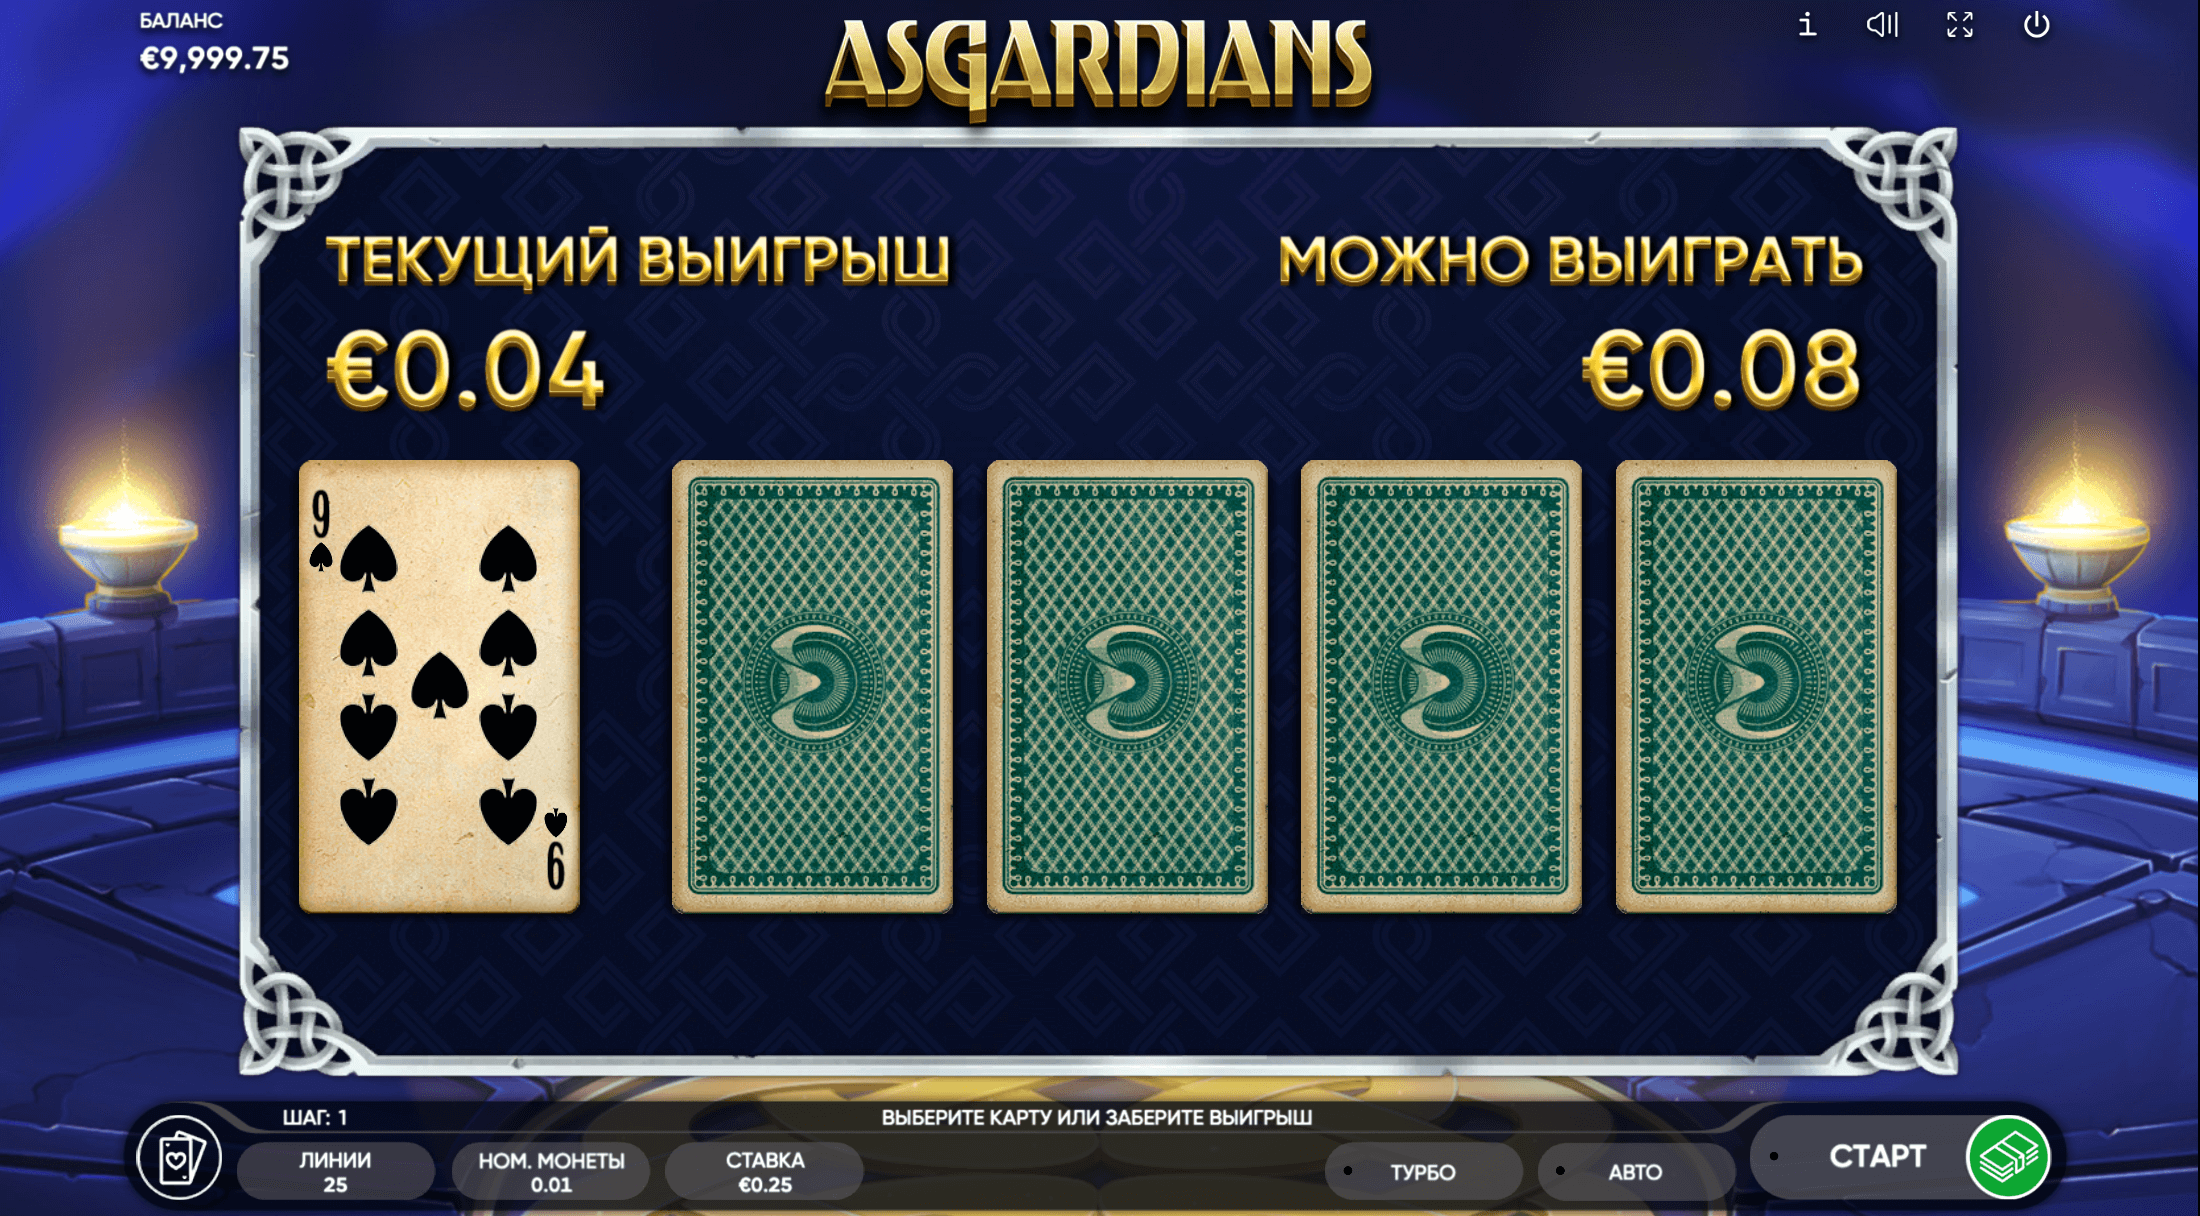 Asgardians proceso de juego